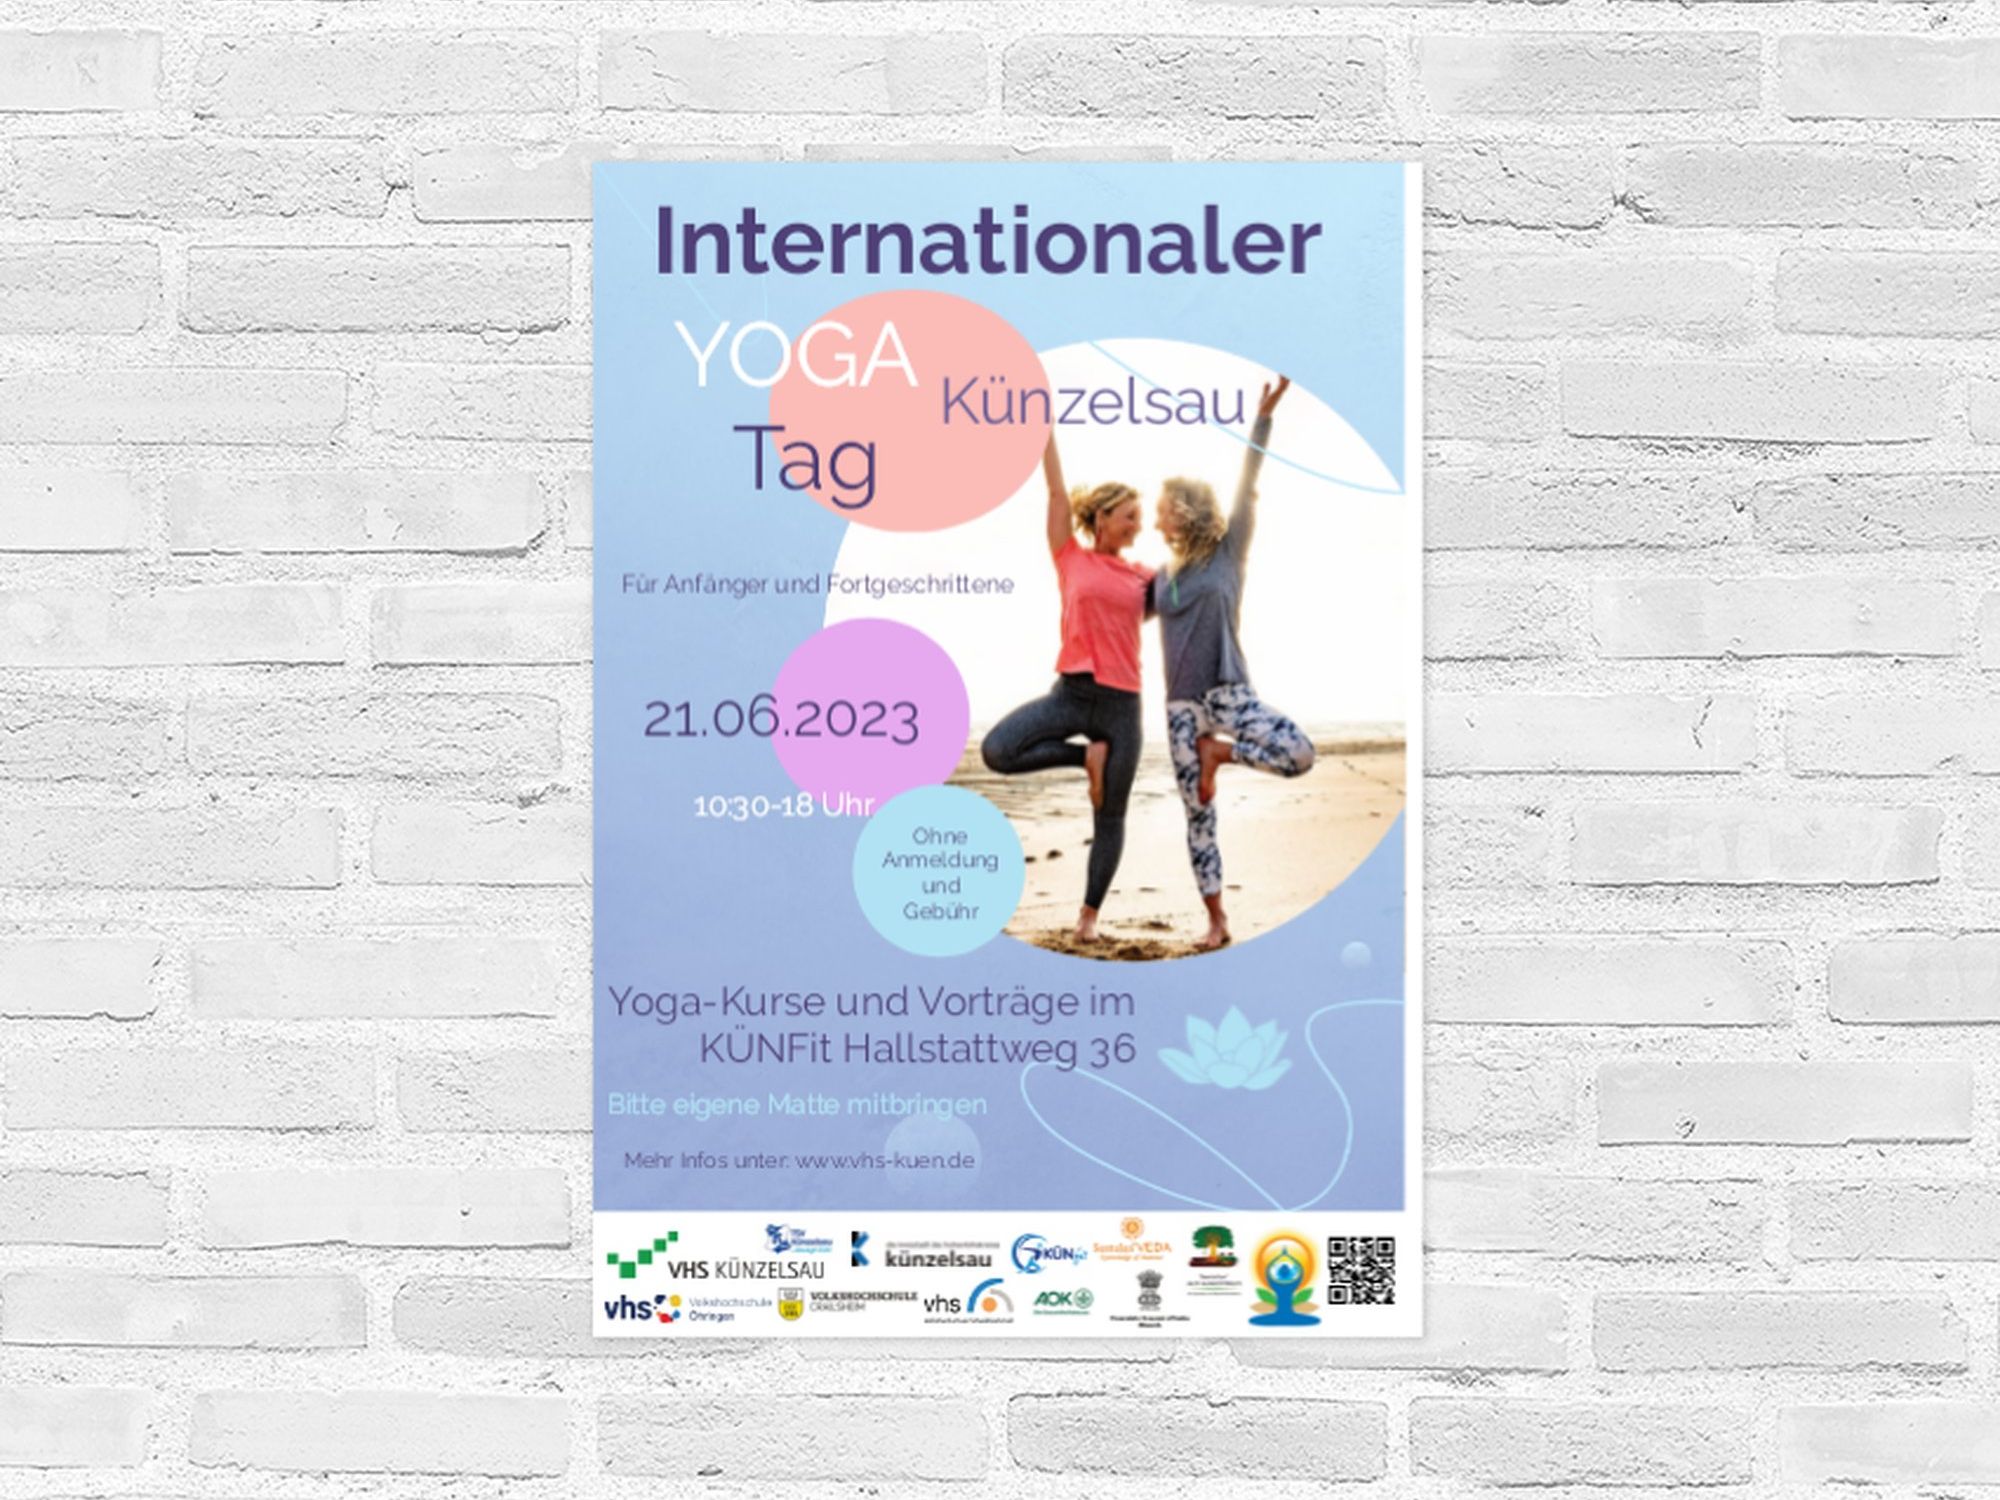 Plakat Internationaler Tag des Yoga in Künzelsau am 21.06.2023 (Zwei Frauen in Yogapose am Strand)